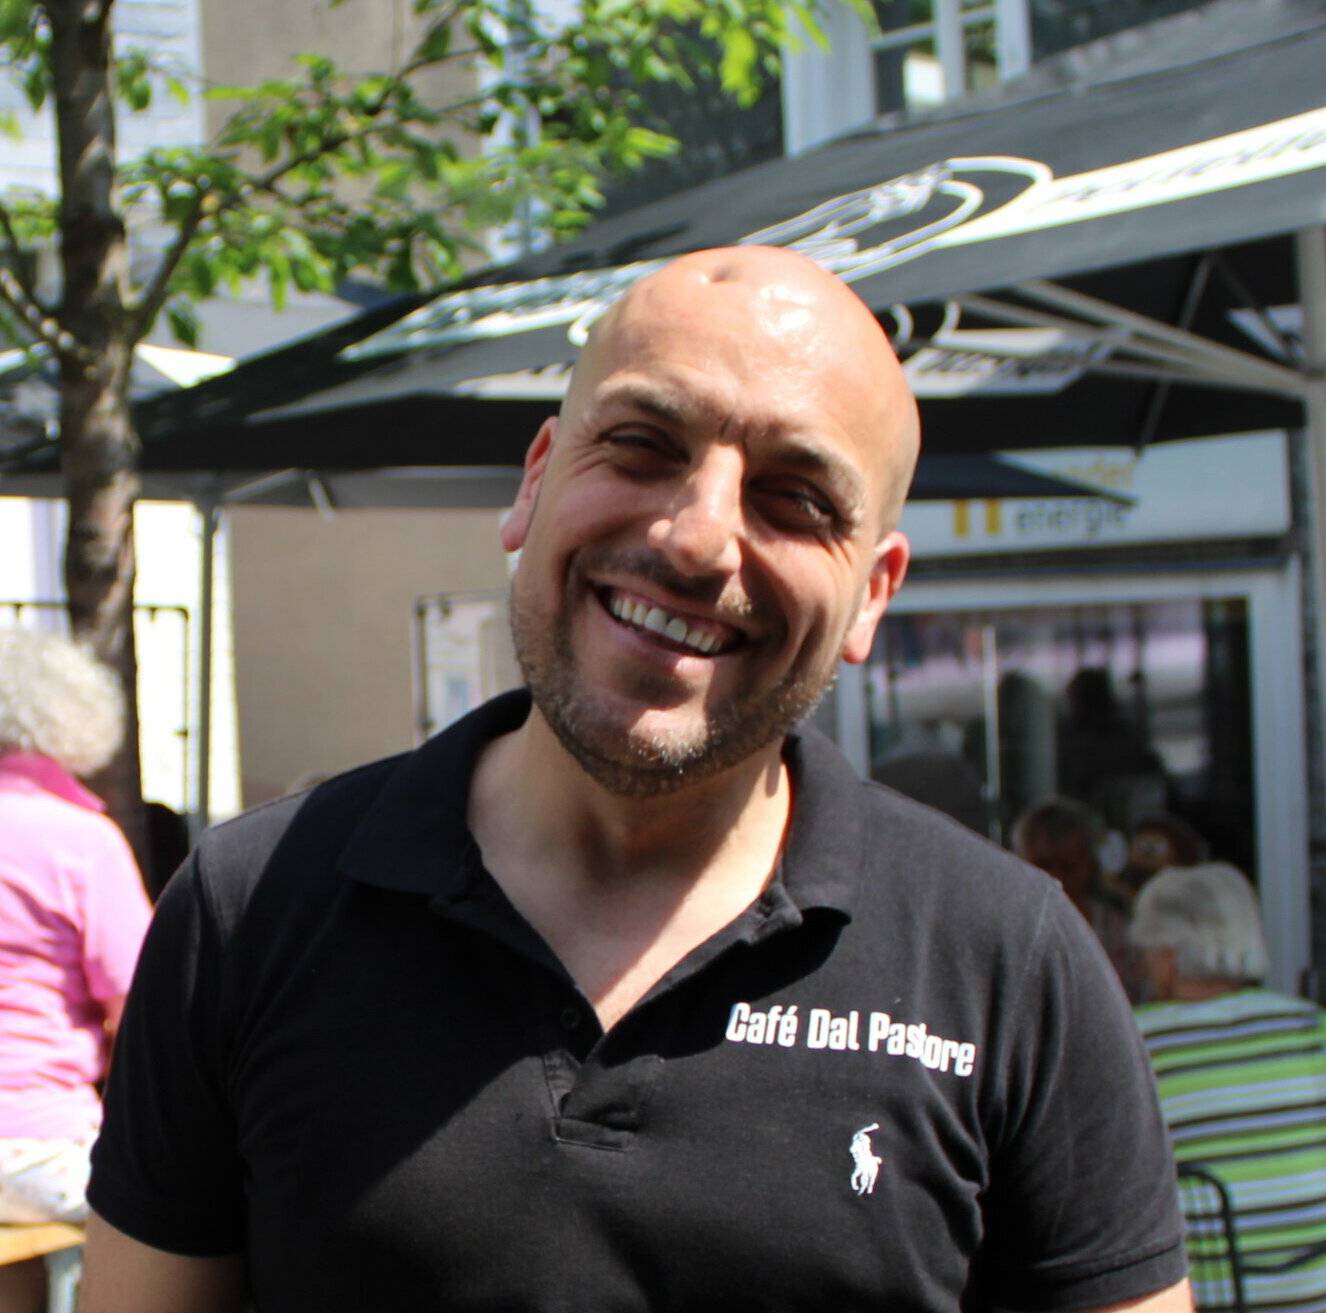  Silvio Miglietta betreibt das Café Dal Pastore, einen beliebten Treffpunkt in der Mettmanner City. Michael Hoffstaedter führt das Geschäft Mode Hoffstaedter gleich nebenan. 